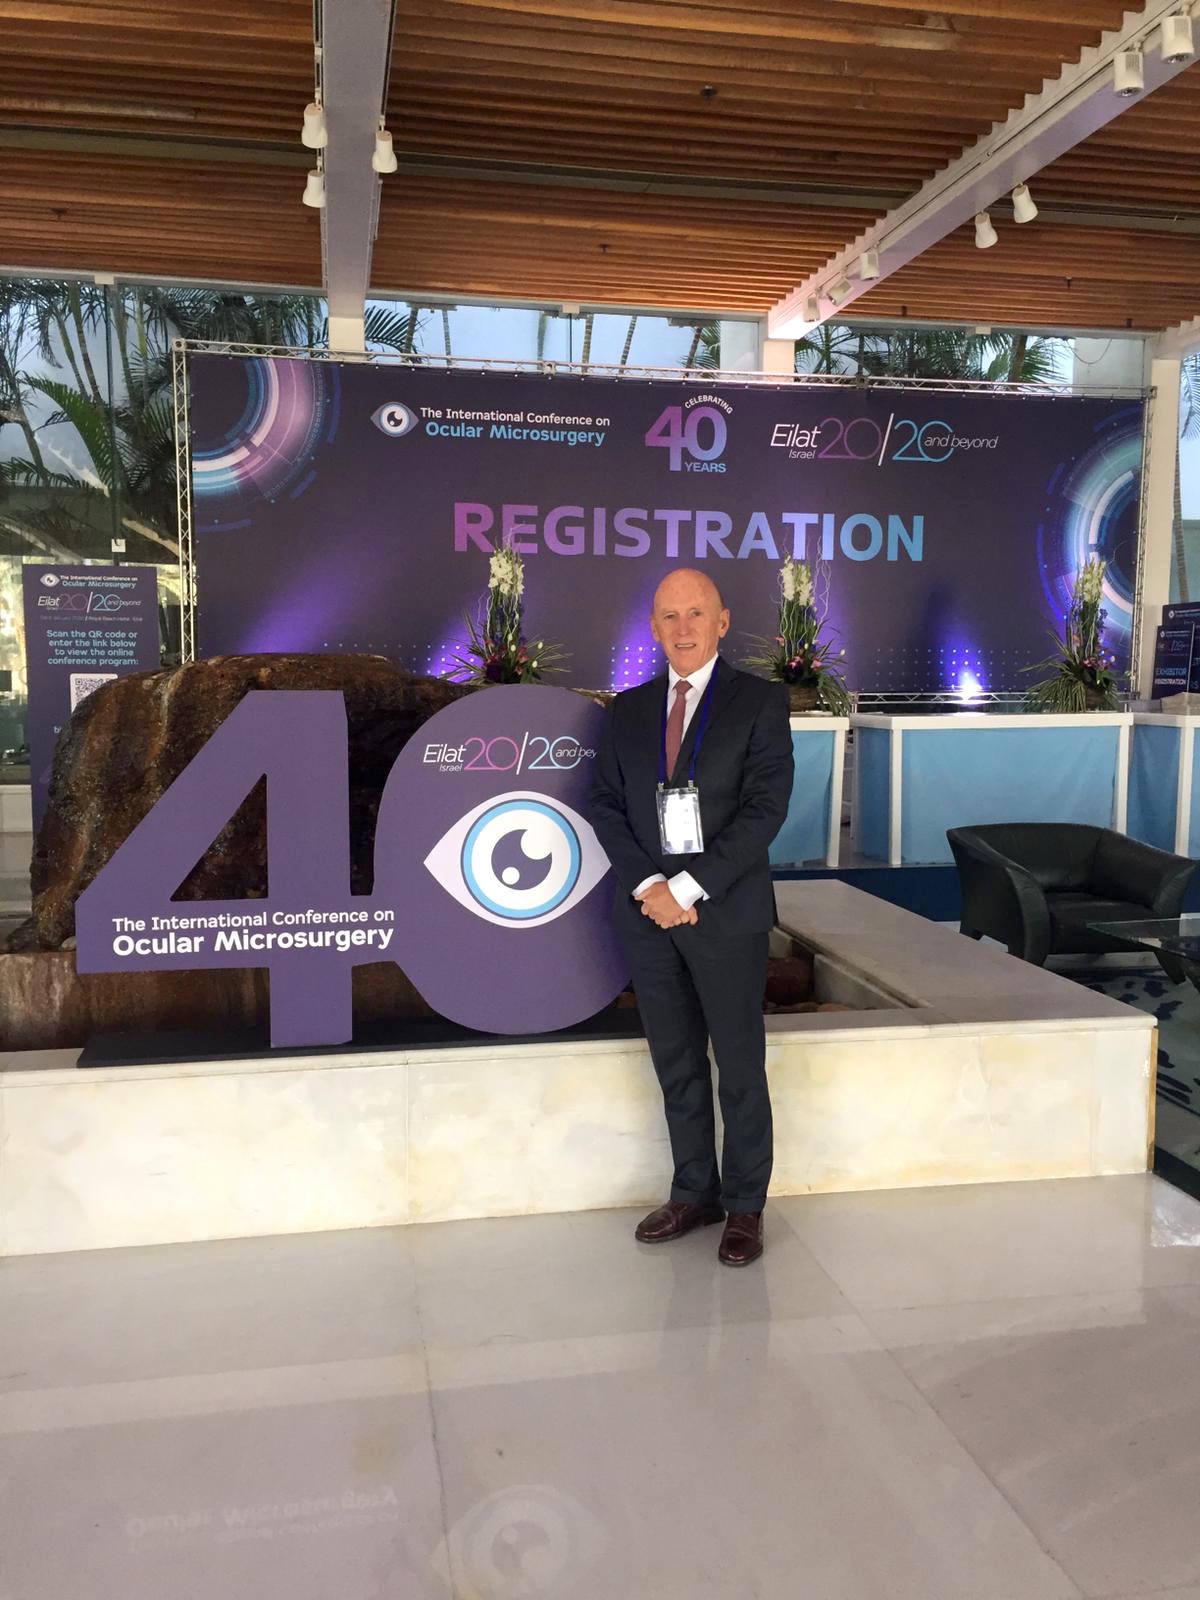 Conferencia Internacional sobre Microcirugía Ocular – ‘Eilat 20/20